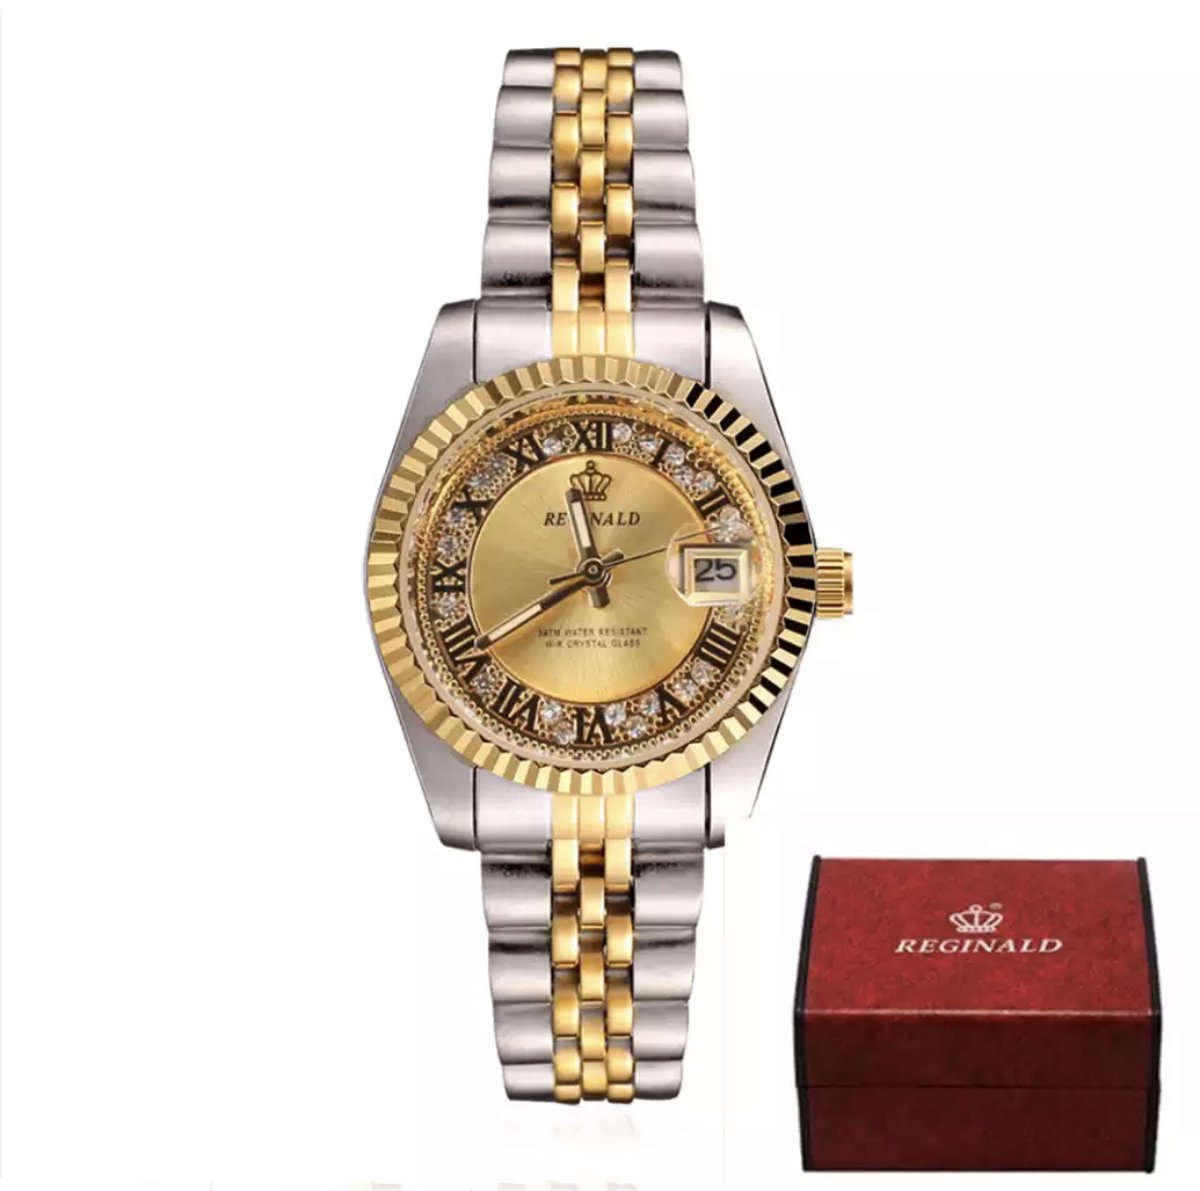 Reginald Horloges - Gold - Horloge vrouwen - Luxe Design - Dames horloge - 27 mm - Roestvrij Staal - Waterbestendig - Schokbestendig - Geschenkset